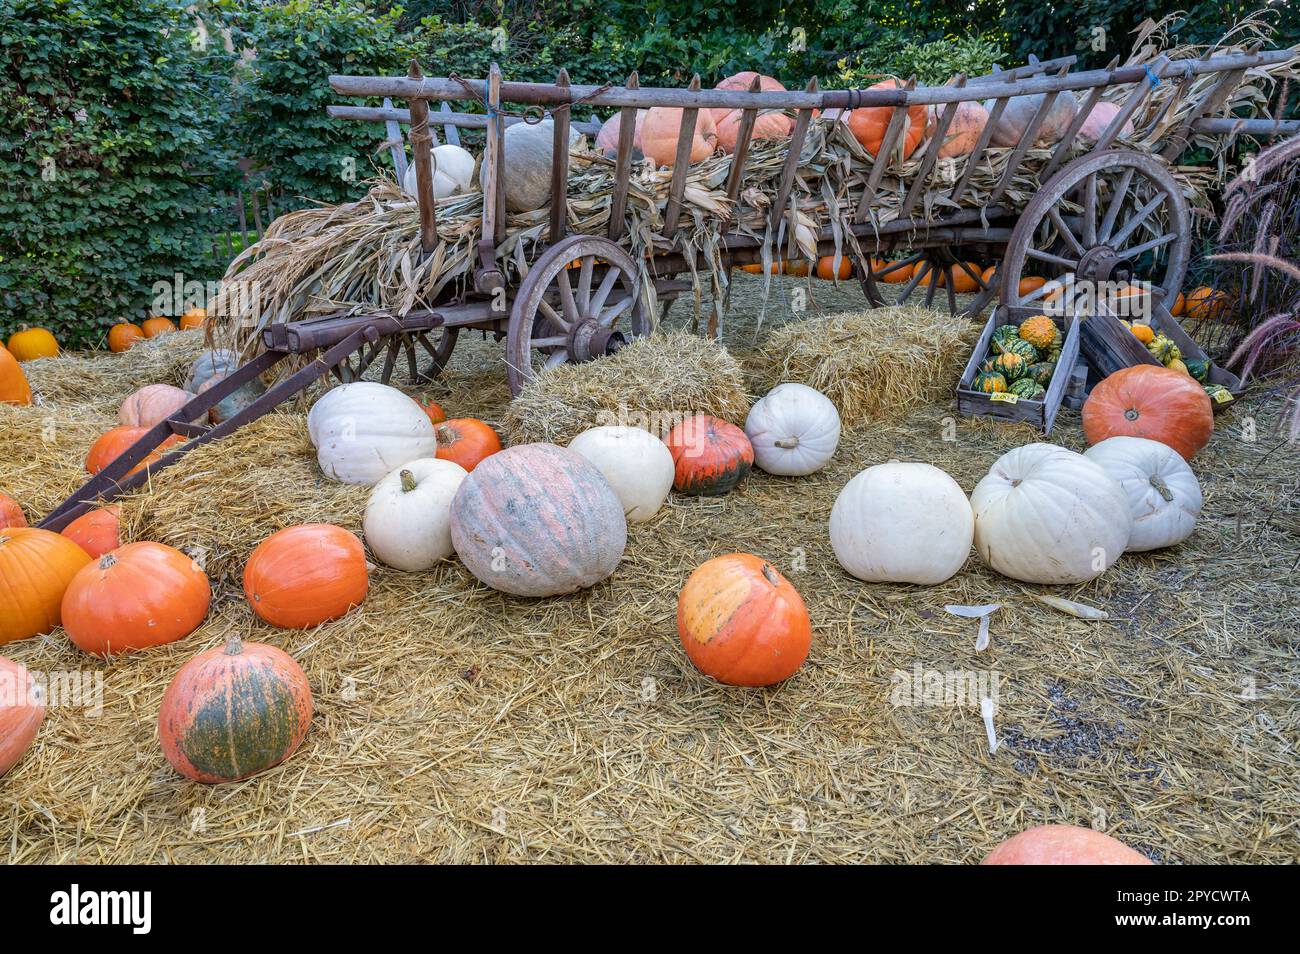 Encore de la vie de grandes citrouilles de couleur orange et blanche couchés devant un wagon en bois dans une ferme pendant la saison de récolte en octobre Banque D'Images